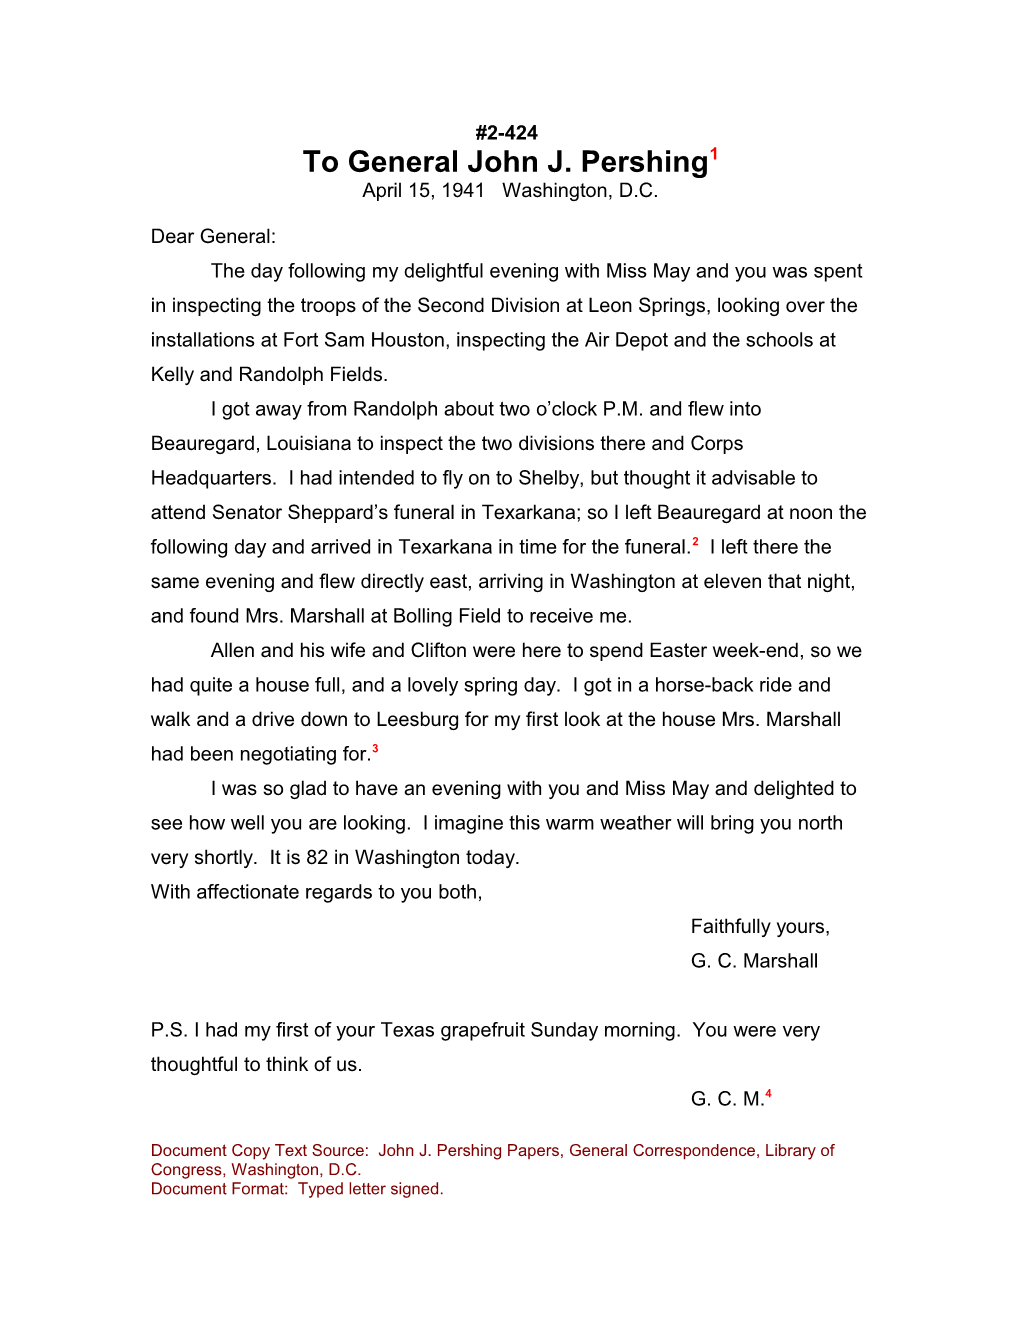 To General John J. Pershing1